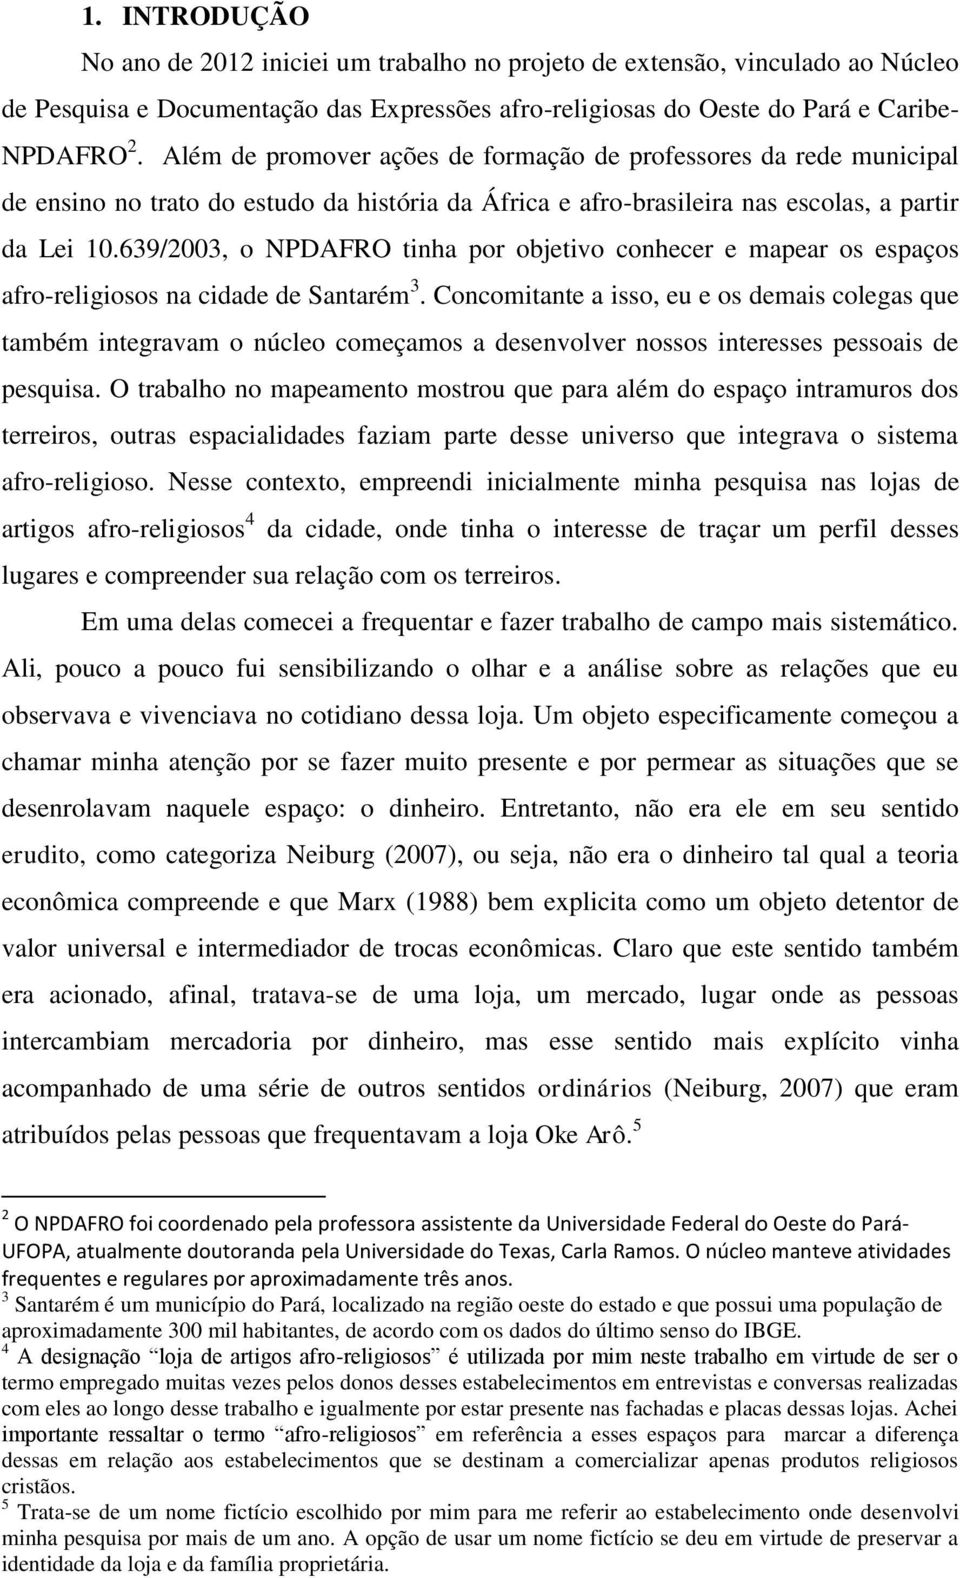 639/2003, o NPDAFRO tinha por objetivo conhecer e mapear os espaços afro-religiosos na cidade de Santarém 3.